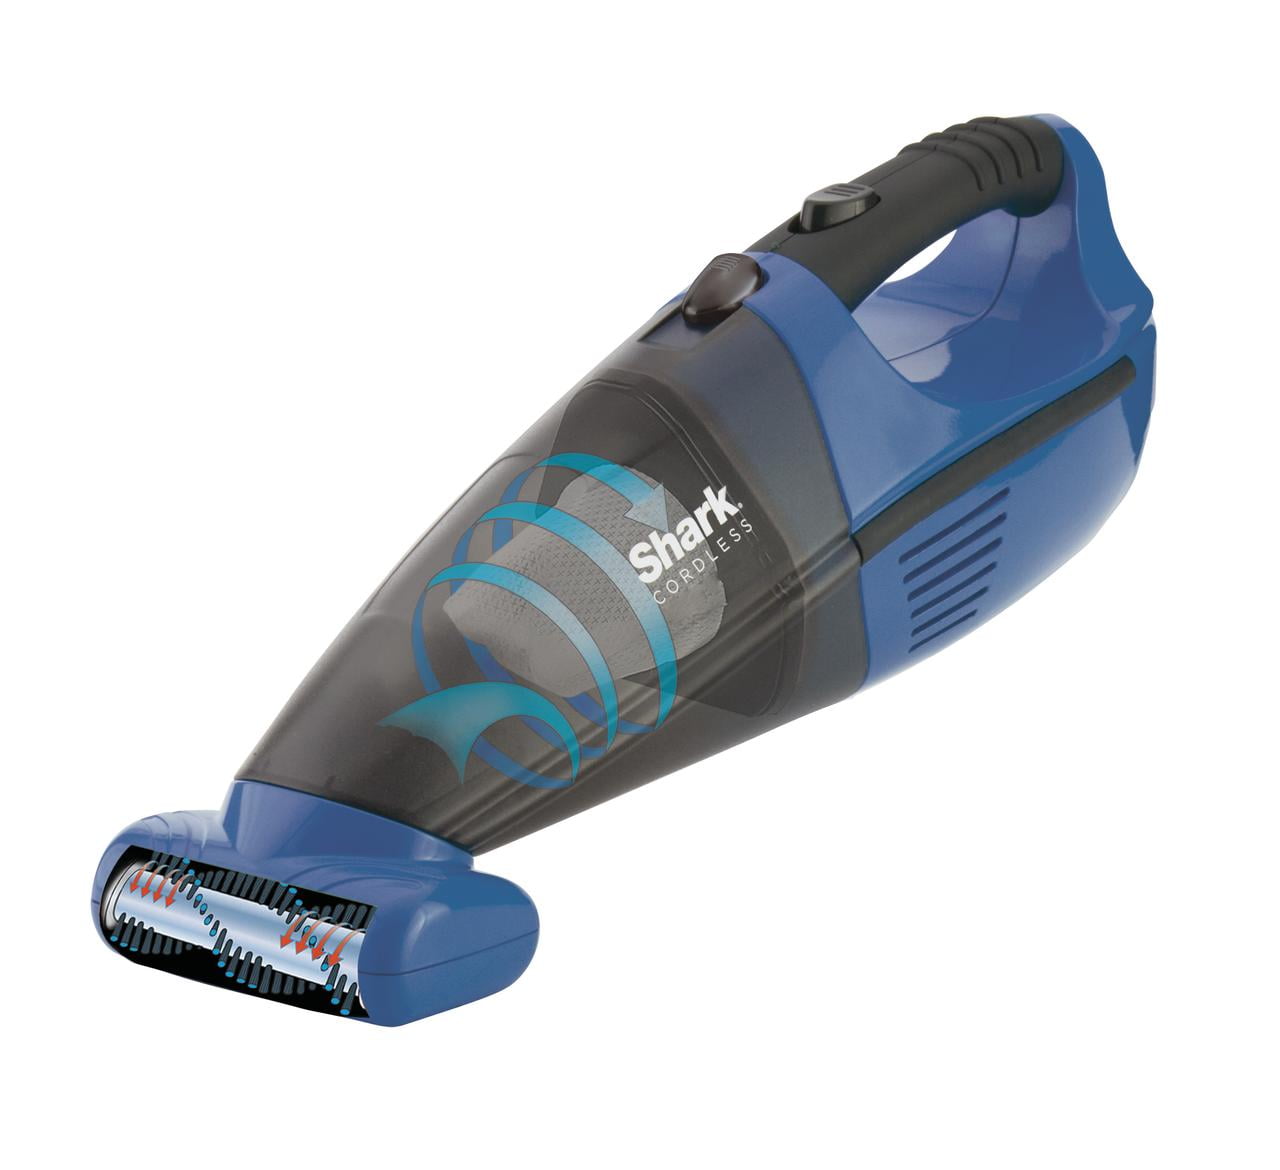 Gray LV901 SharkNinja Shark Handheld Vacuum